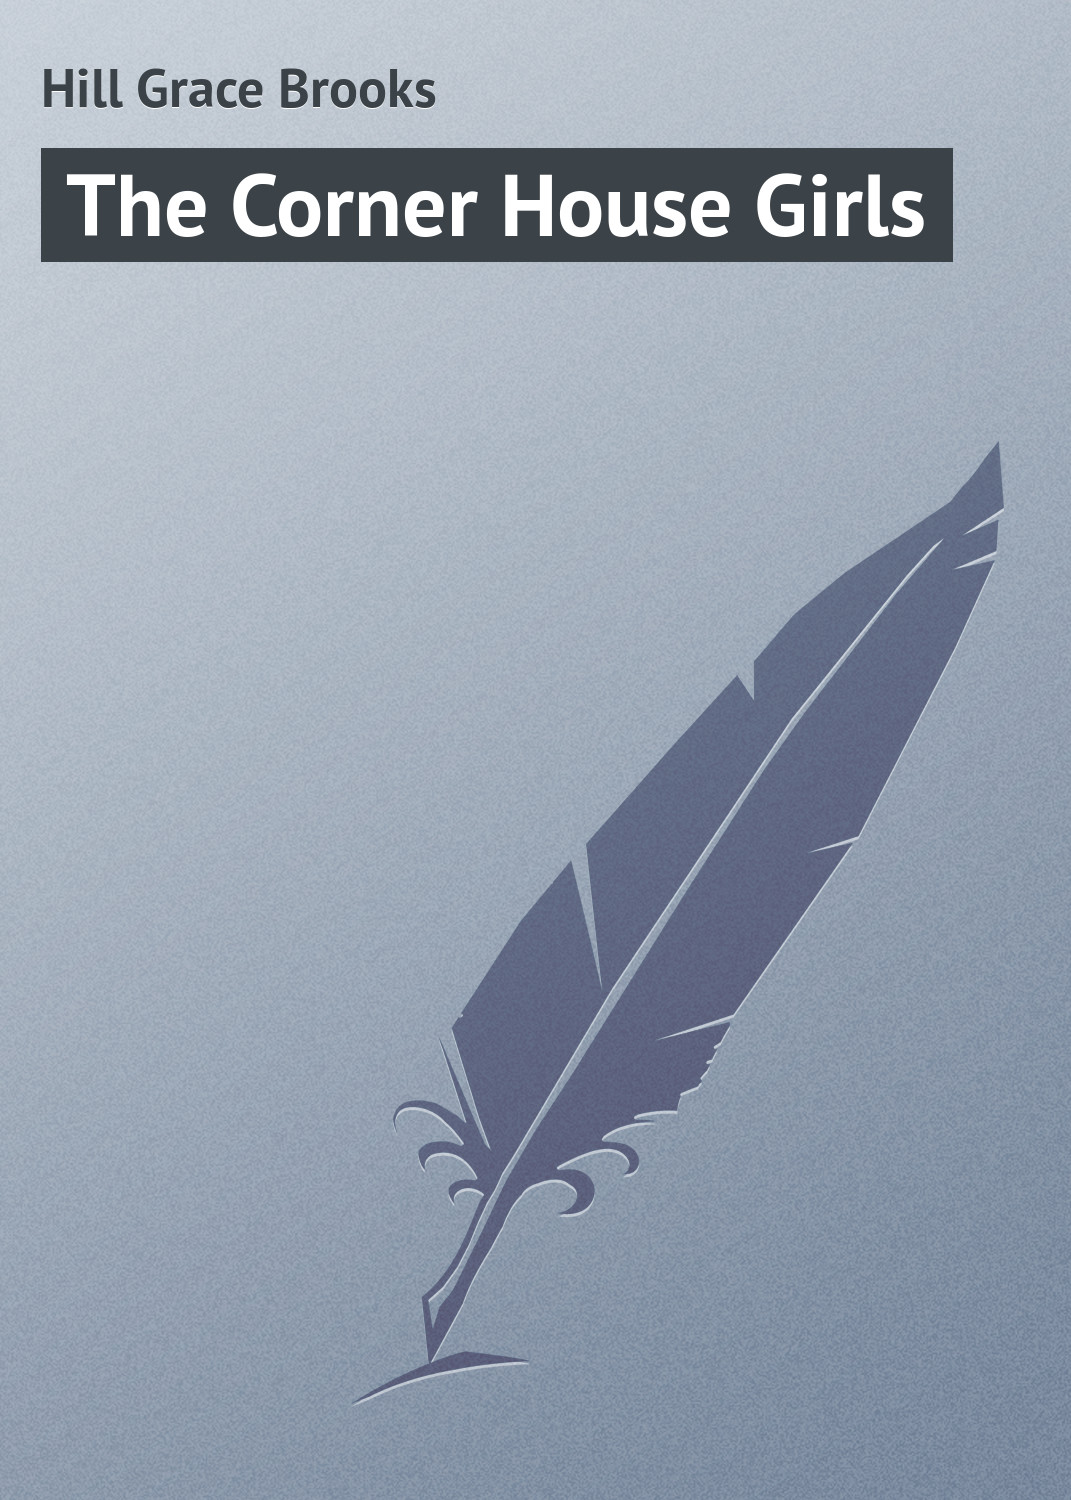 Книга The Corner House Girls из серии , созданная Grace Hill, может относится к жанру Зарубежные детские книги, Зарубежная классика, Иностранные языки. Стоимость электронной книги The Corner House Girls с идентификатором 23154219 составляет 5.99 руб.